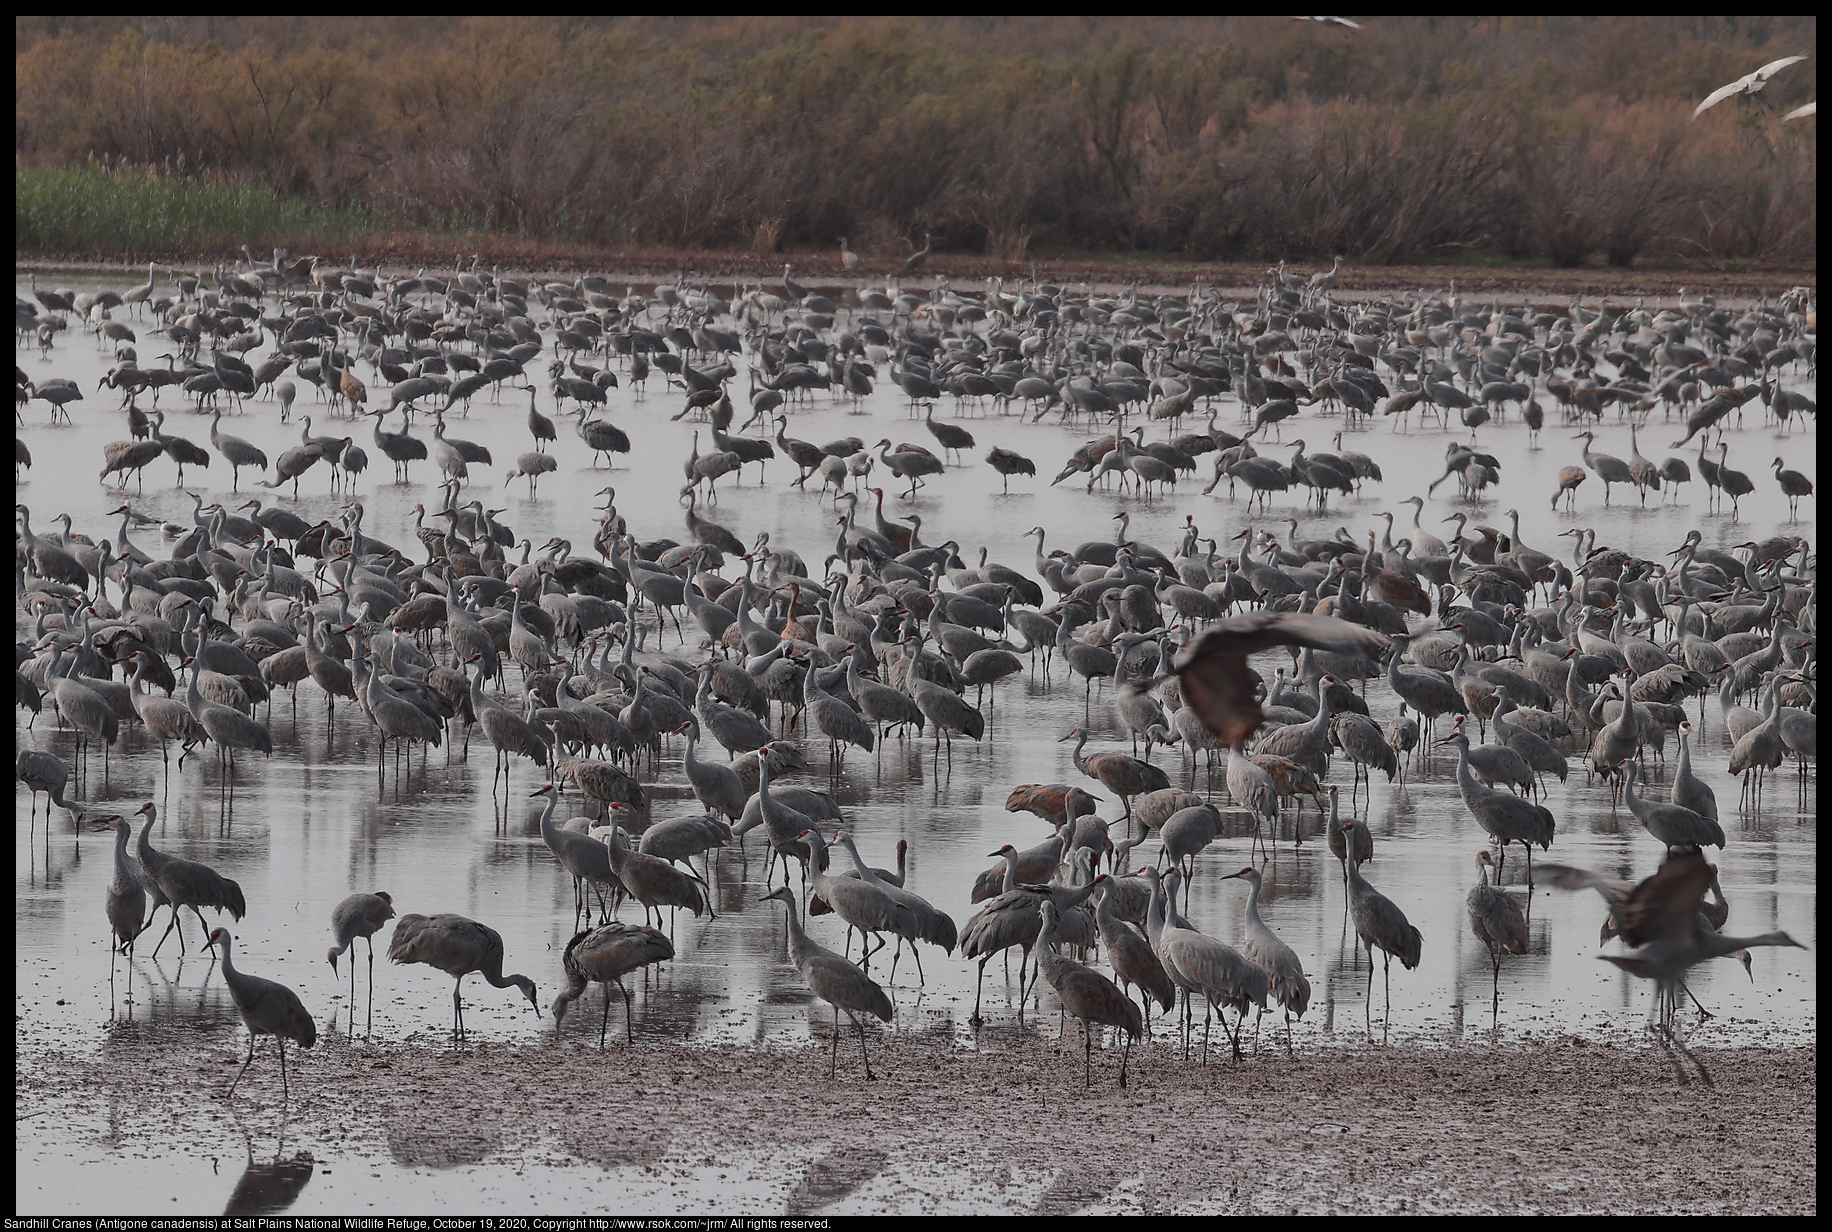 Sandhill Cranes (Antigone canadensis) at Salt Plains National Wildlife Refuge, October 19, 2020